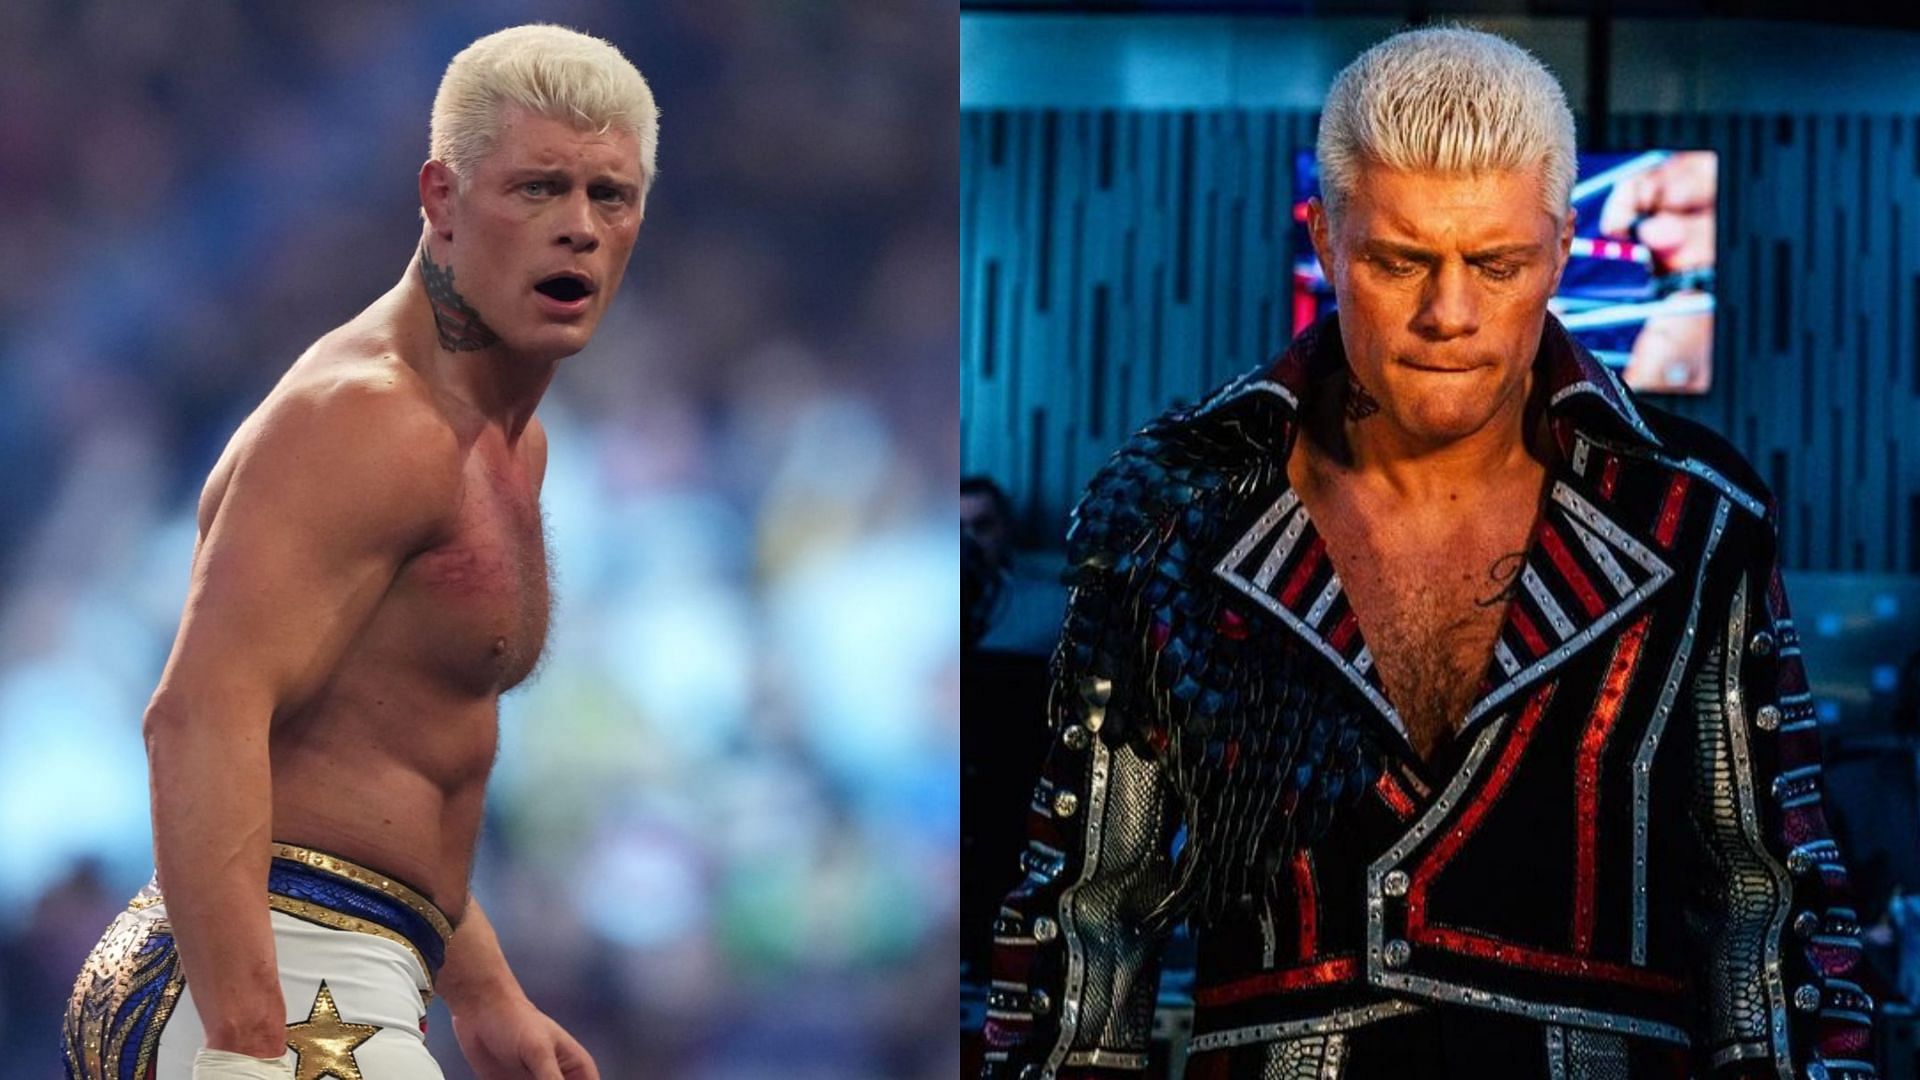 Cody Rhodes defeated Brock Lesnar at WWE Backlash